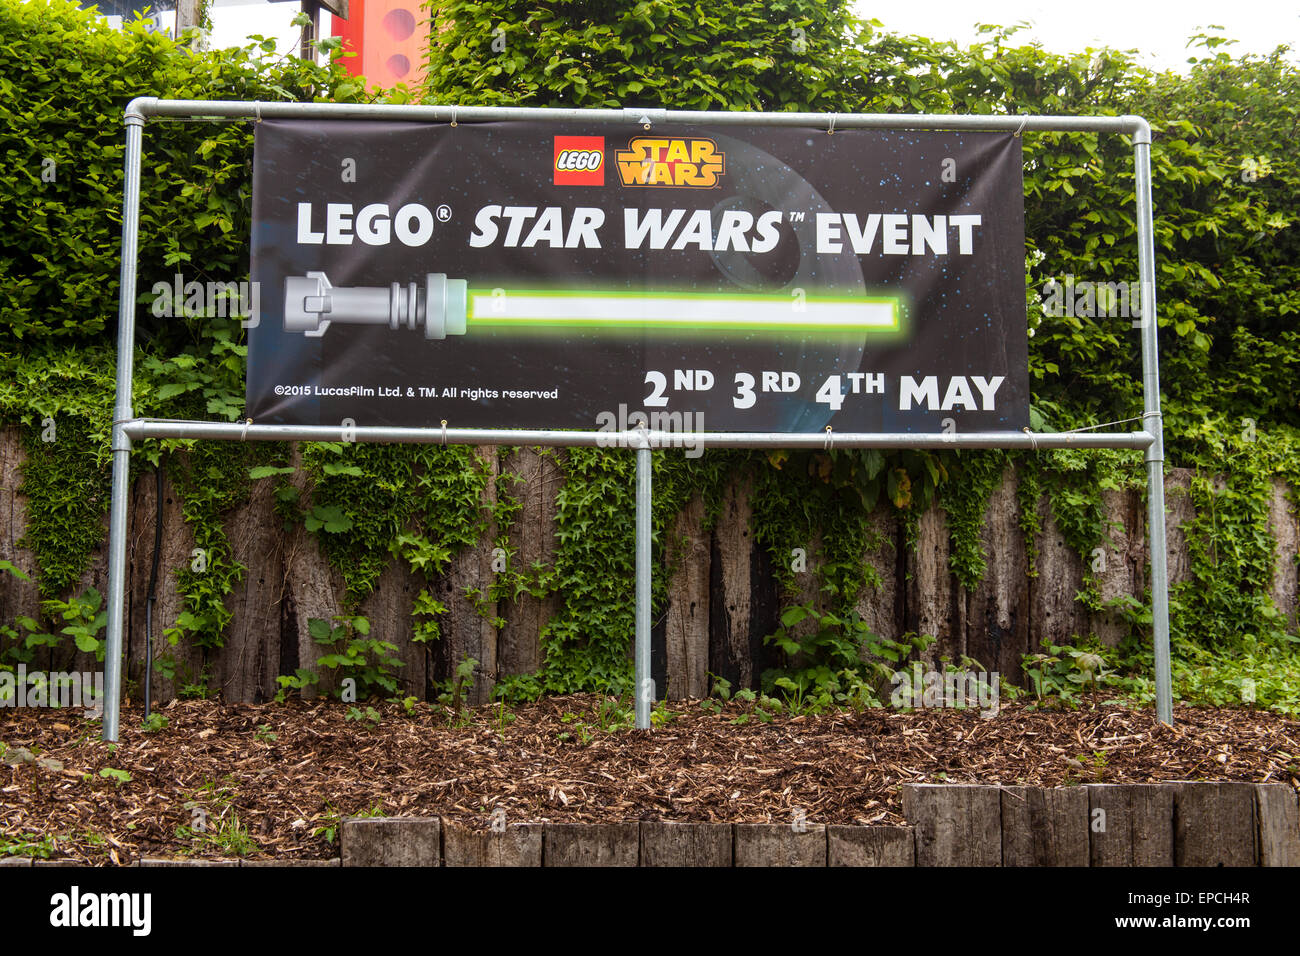 Lego Star Wars signe d'événements au Parc Legoland Windsor, London, Angleterre, Royaume-Uni. Banque D'Images